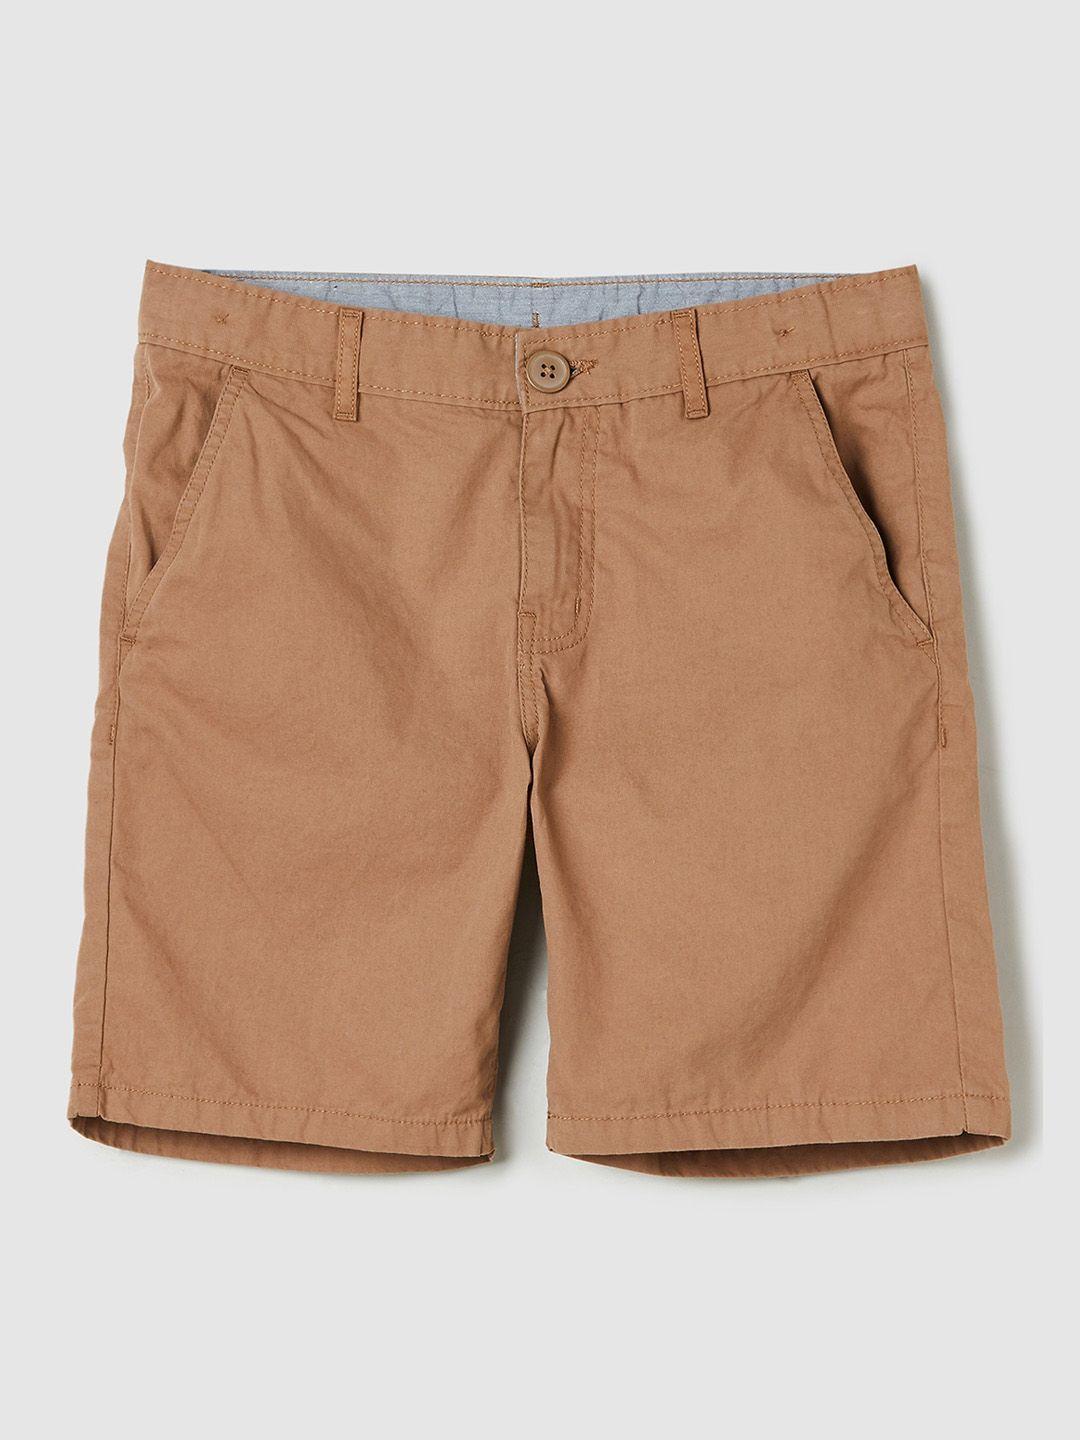 max Boys Brown Shorts